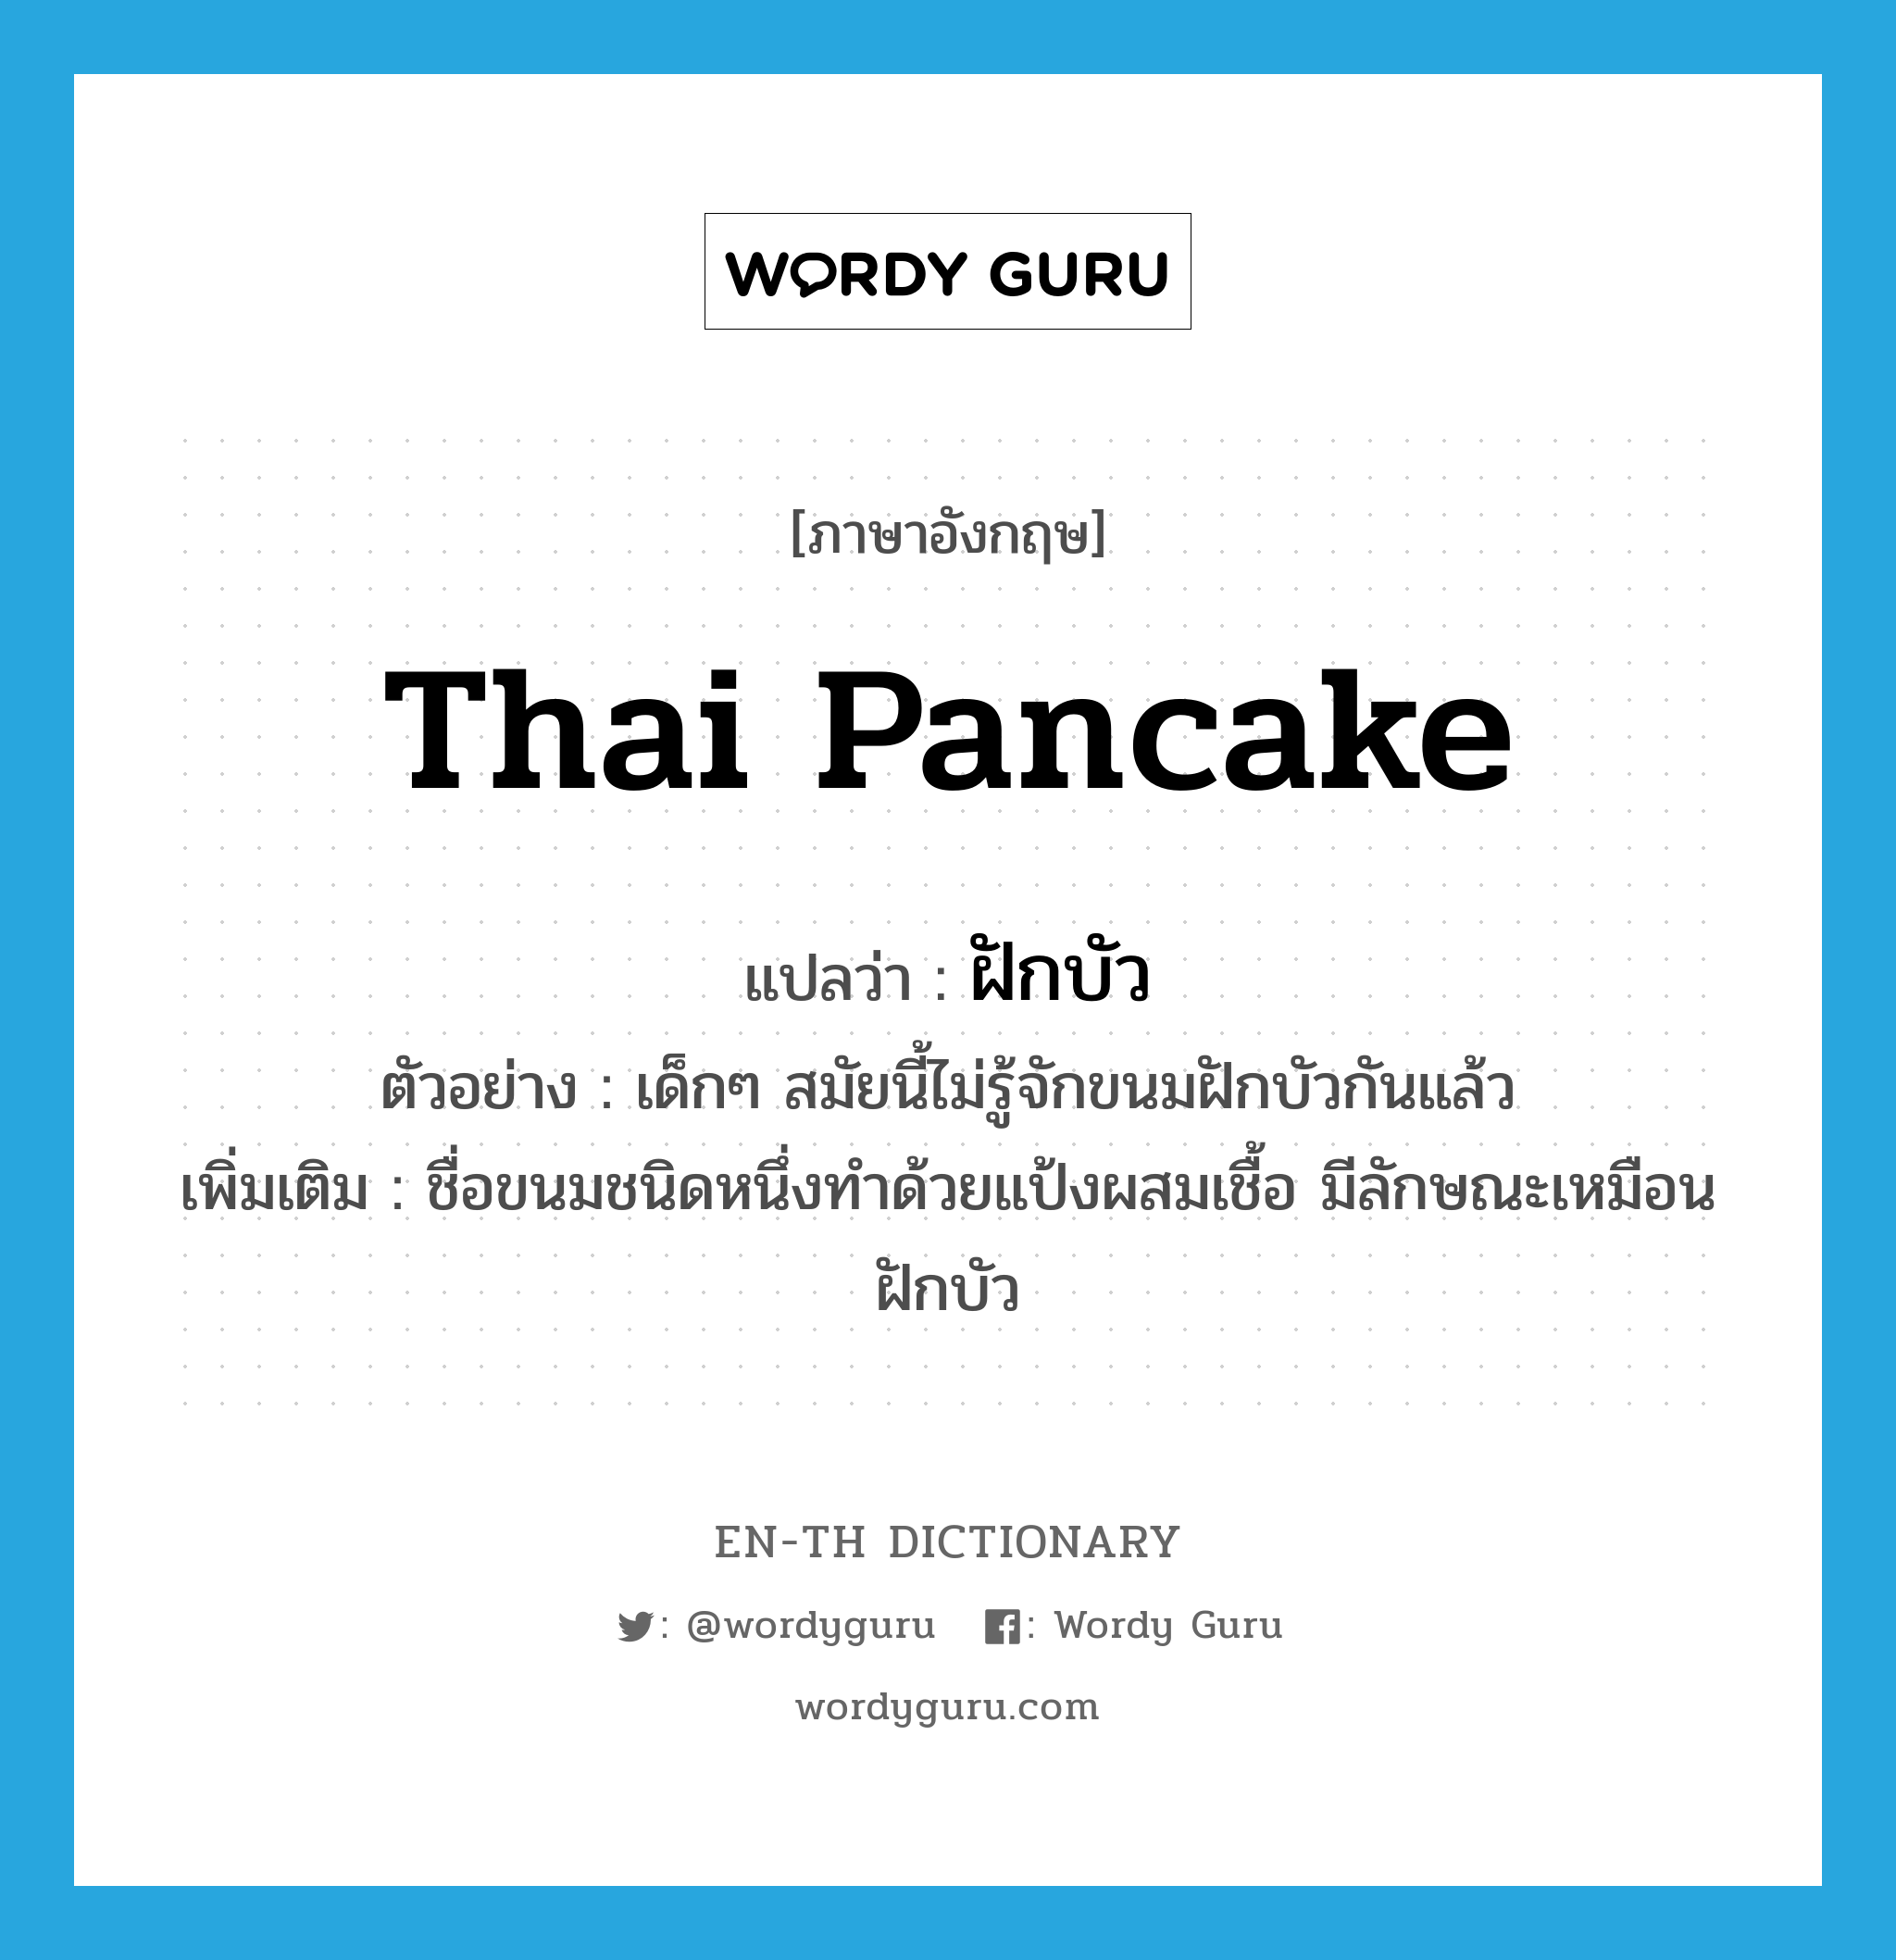 ฝักบัว ภาษาอังกฤษ?, คำศัพท์ภาษาอังกฤษ ฝักบัว แปลว่า Thai pancake ประเภท N ตัวอย่าง เด็กๆ สมัยนี้ไม่รู้จักขนมฝักบัวกันแล้ว เพิ่มเติม ชื่อขนมชนิดหนึ่งทำด้วยแป้งผสมเชื้อ มีลักษณะเหมือนฝักบัว หมวด N